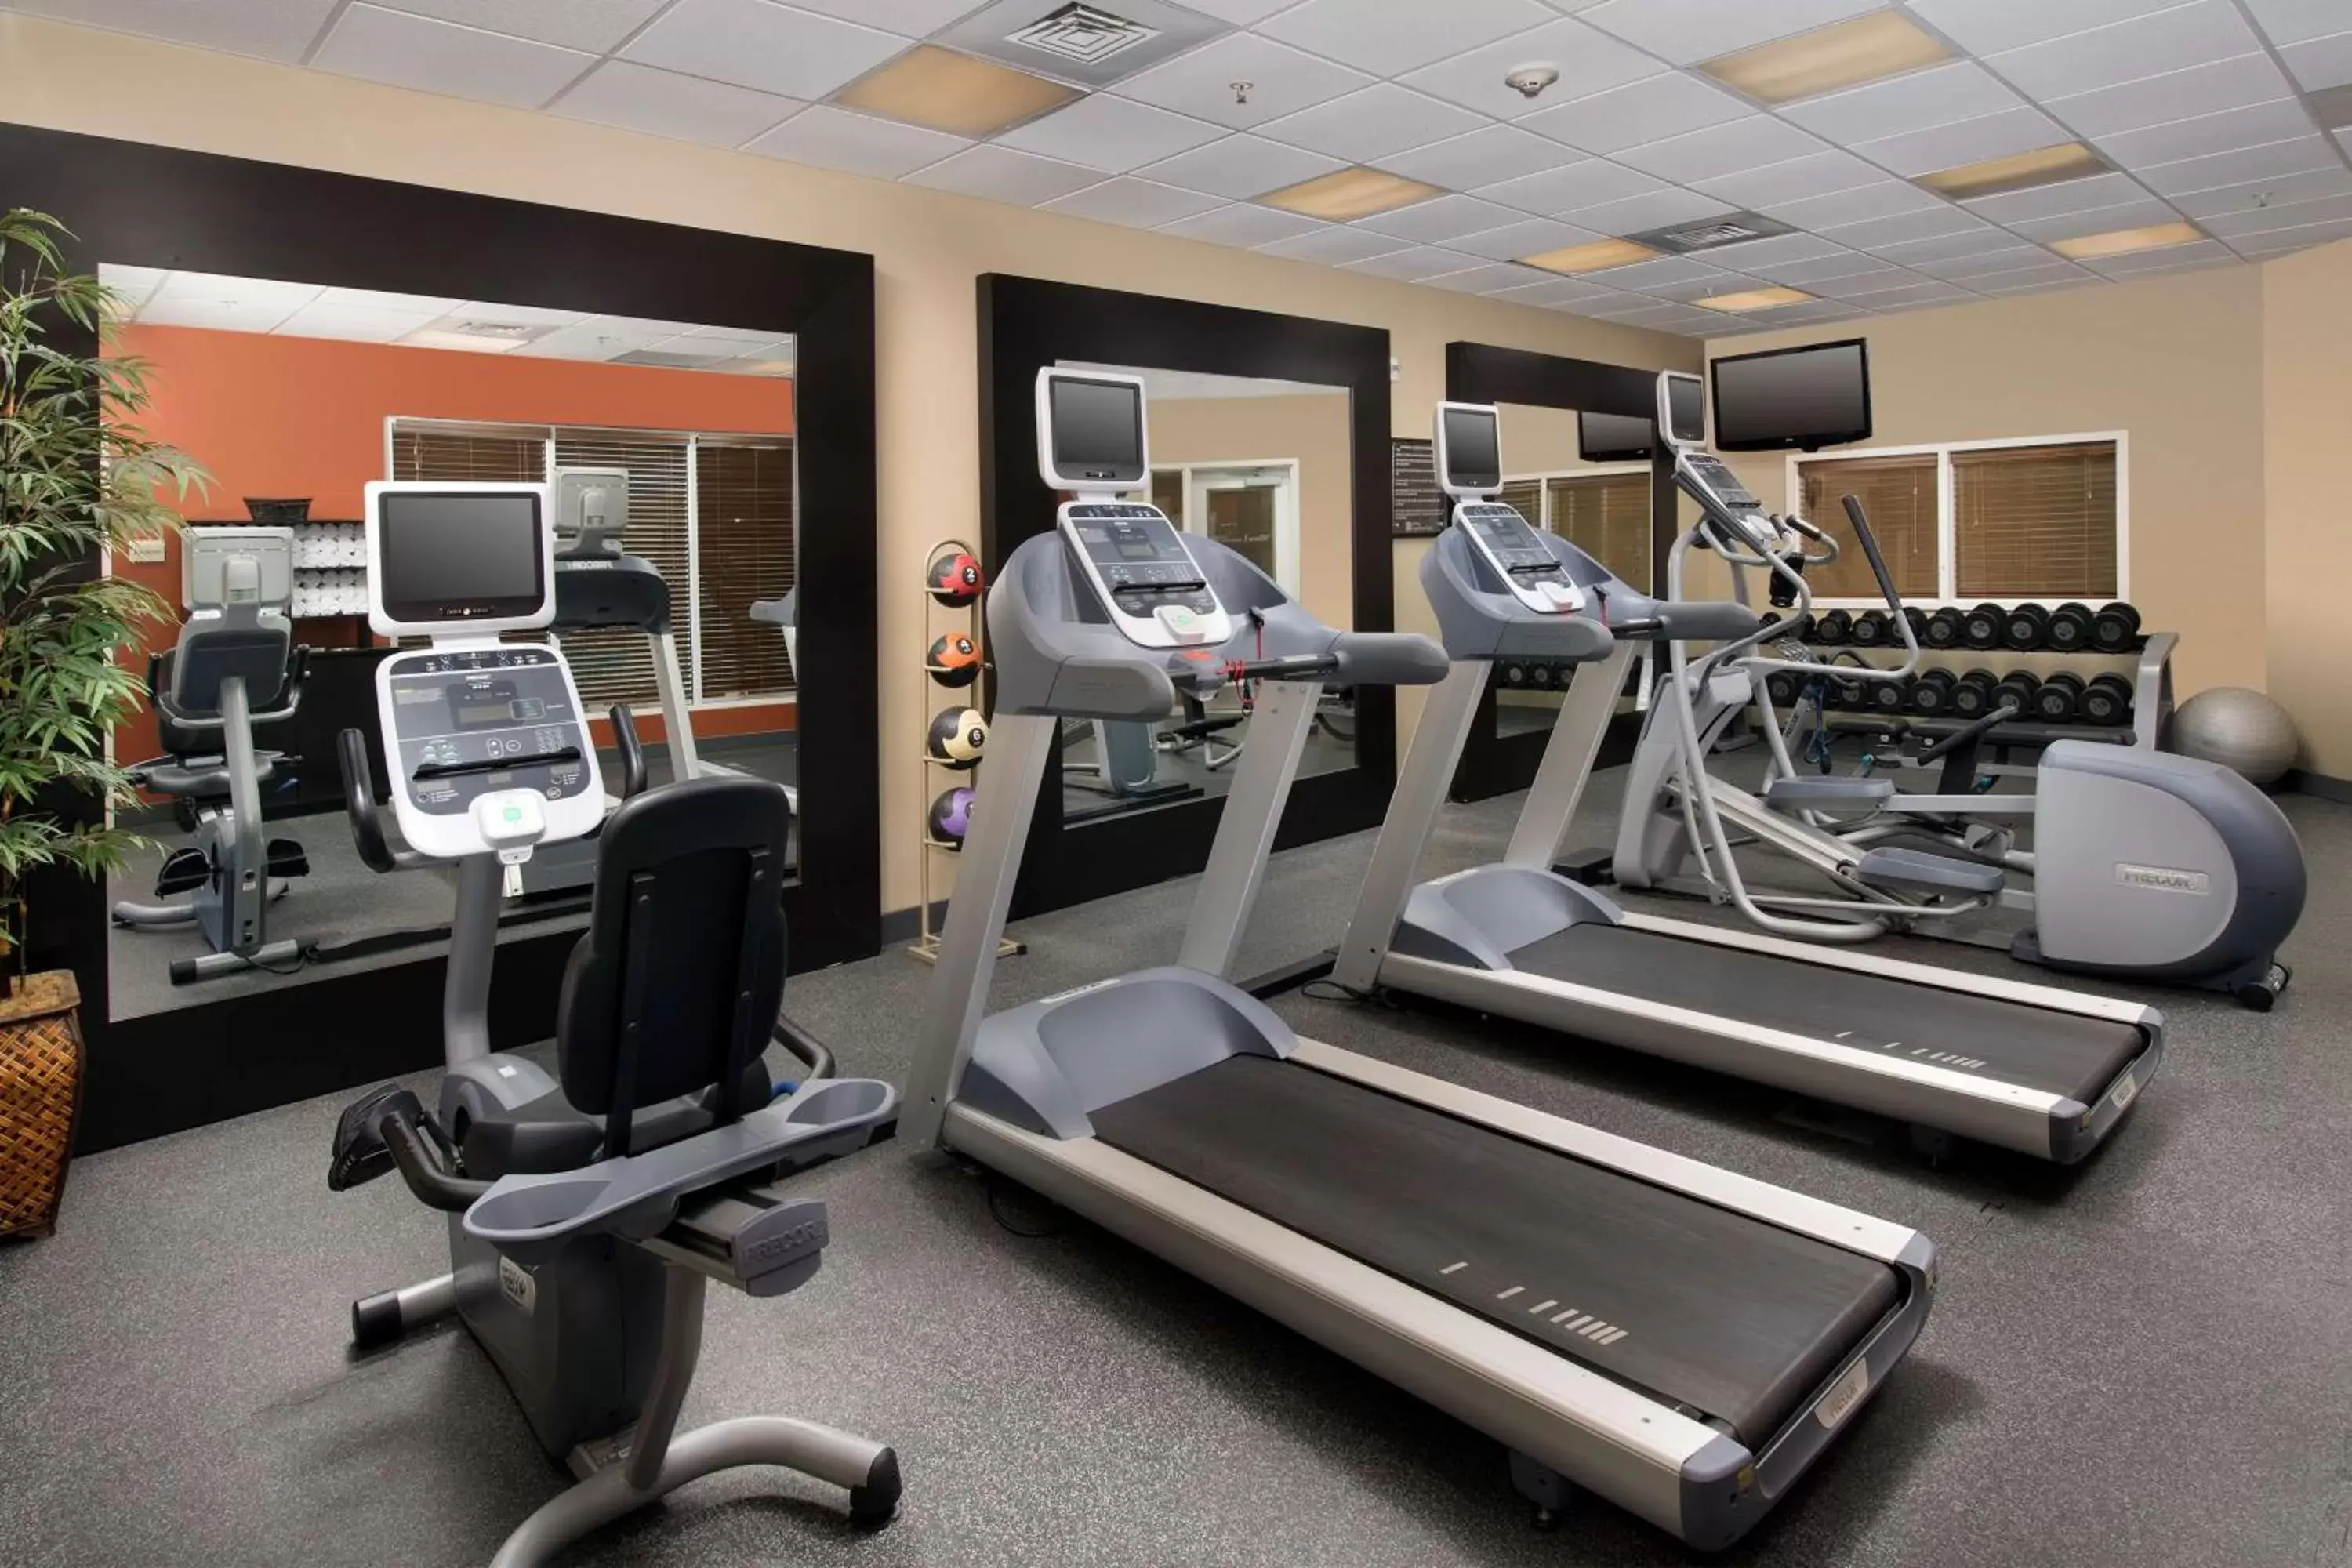 Fitness centre/facilities, Fitness Center/Facilities in Hilton Garden Inn Winston-Salem/Hanes Mall